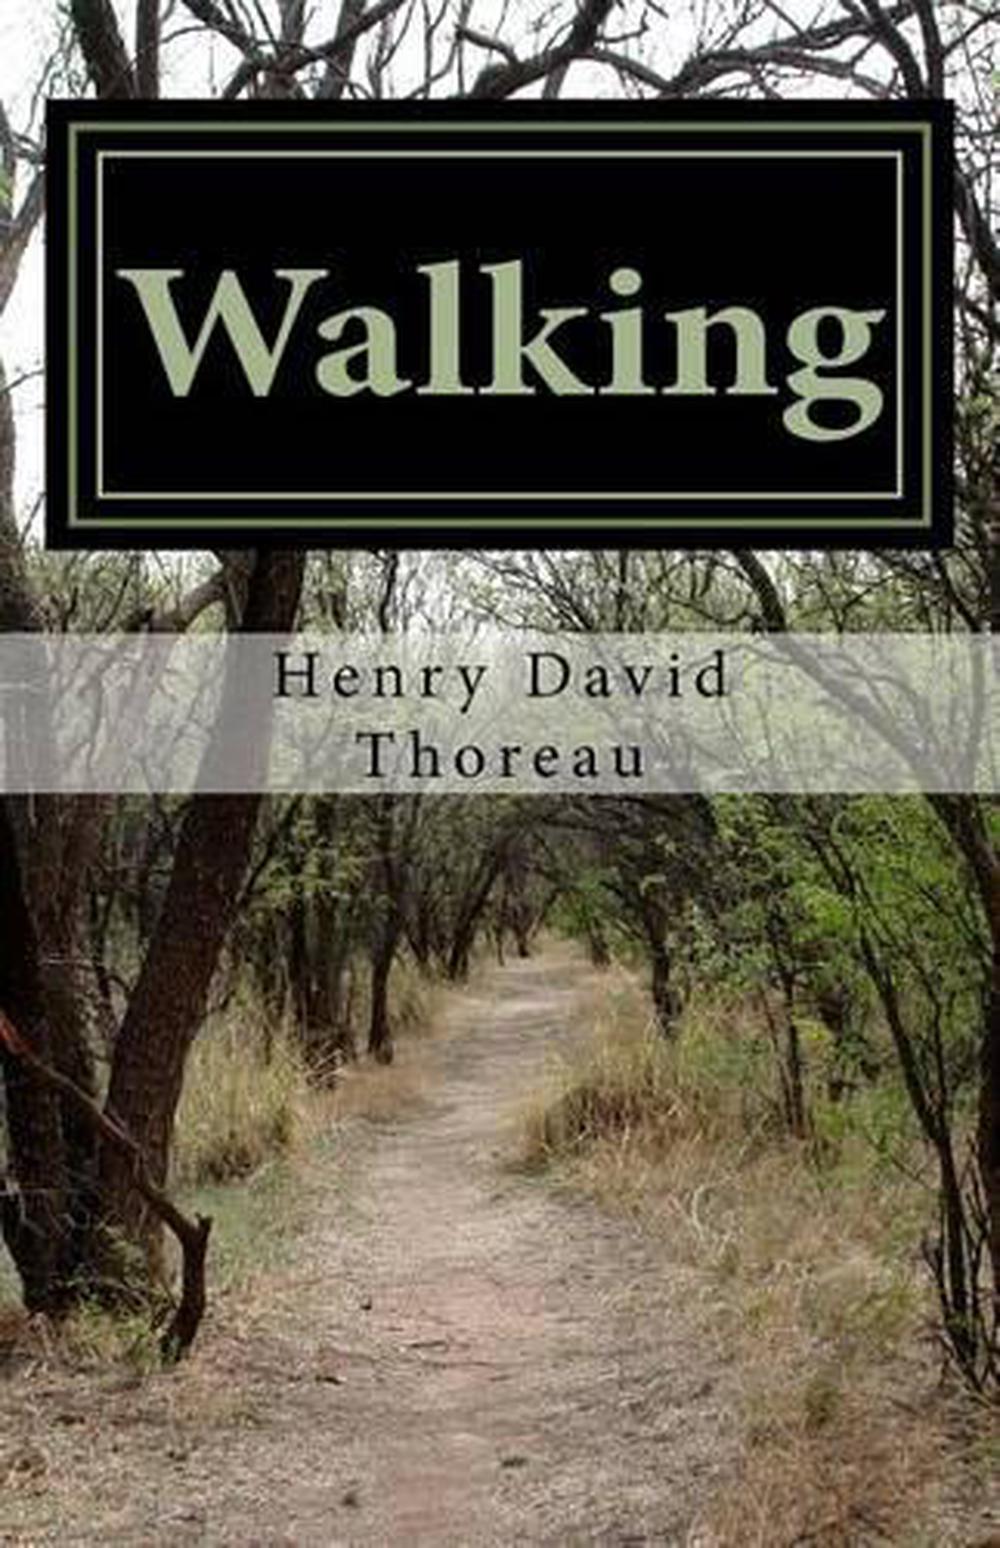 henry david thoreau walking